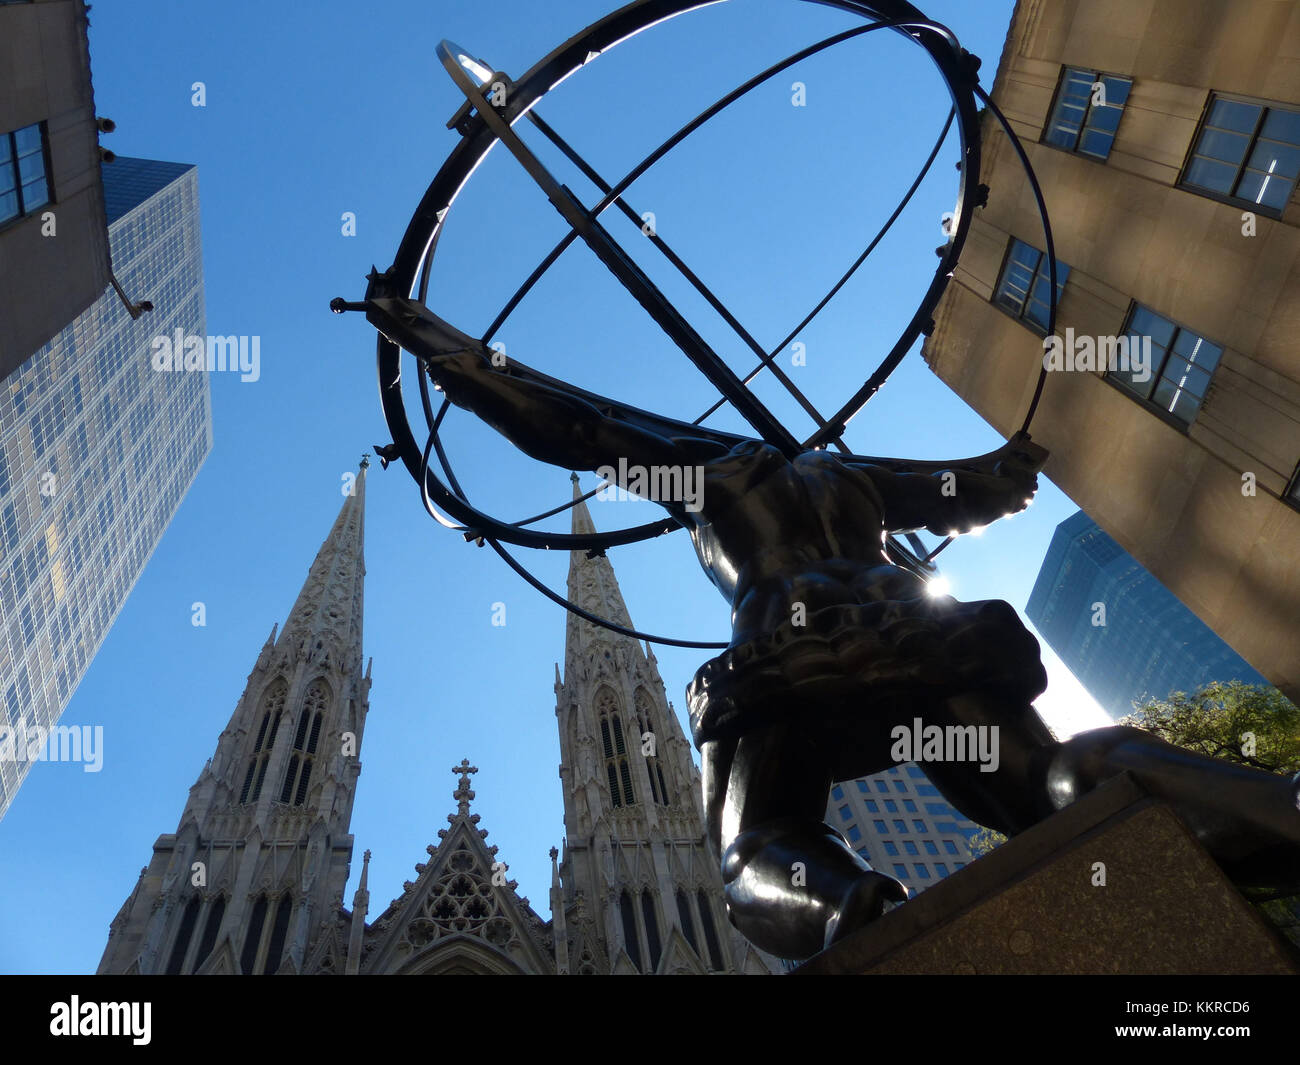 La estatua del Atlas que sostiene los cielos, delante del Rockefeller Center fue esculpida por Lee Lawrie y René Paul Chambellan. Es una escultura Art Deco que fue inaugurada en 1937. Está situado justo al otro lado de la Catedral de Saint Patrick Foto de stock